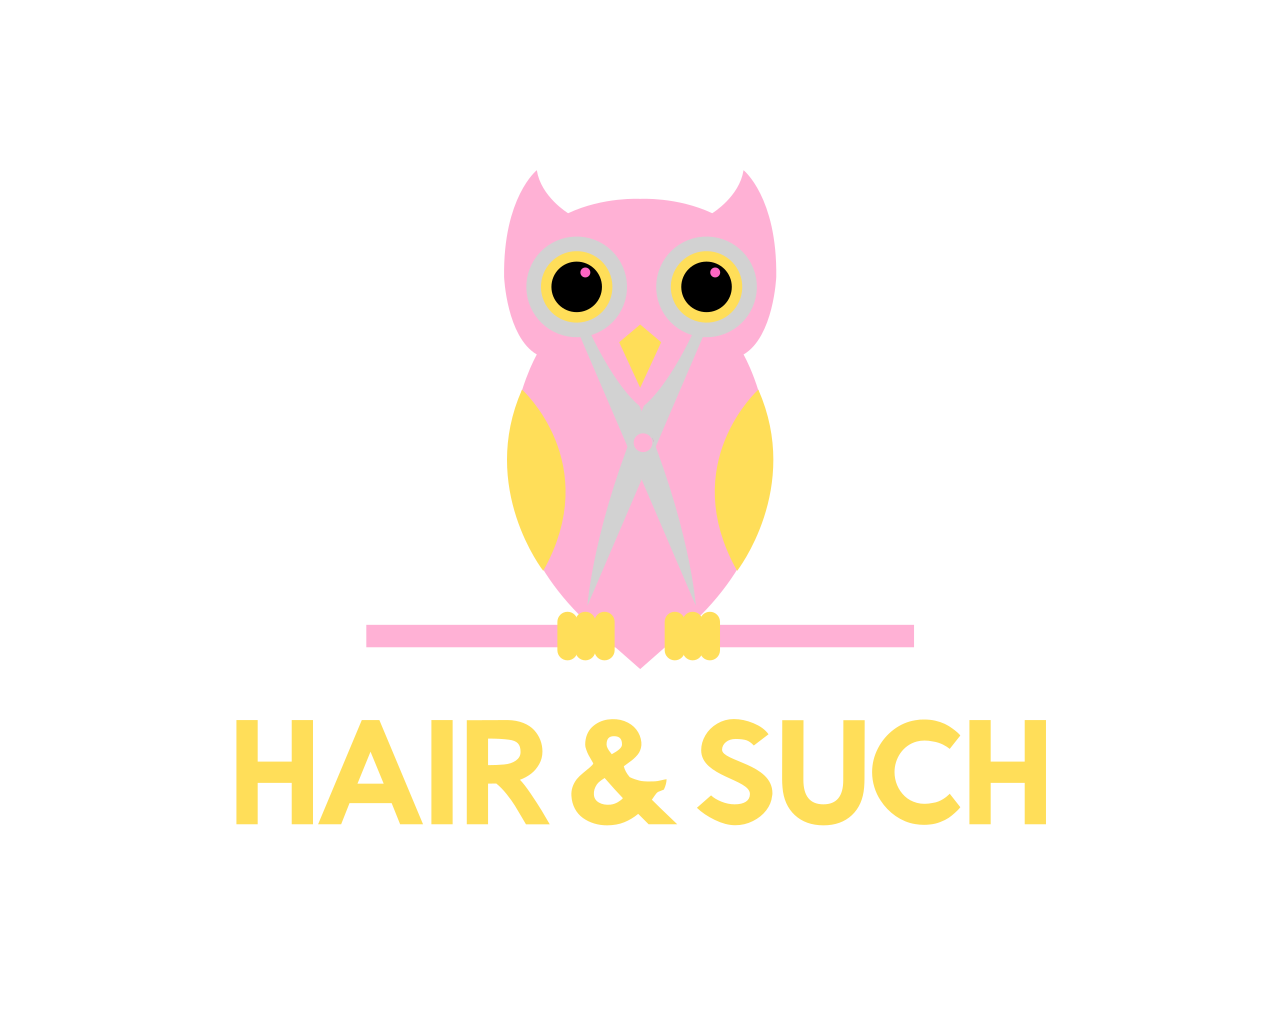 HAIR & SUCH's logo